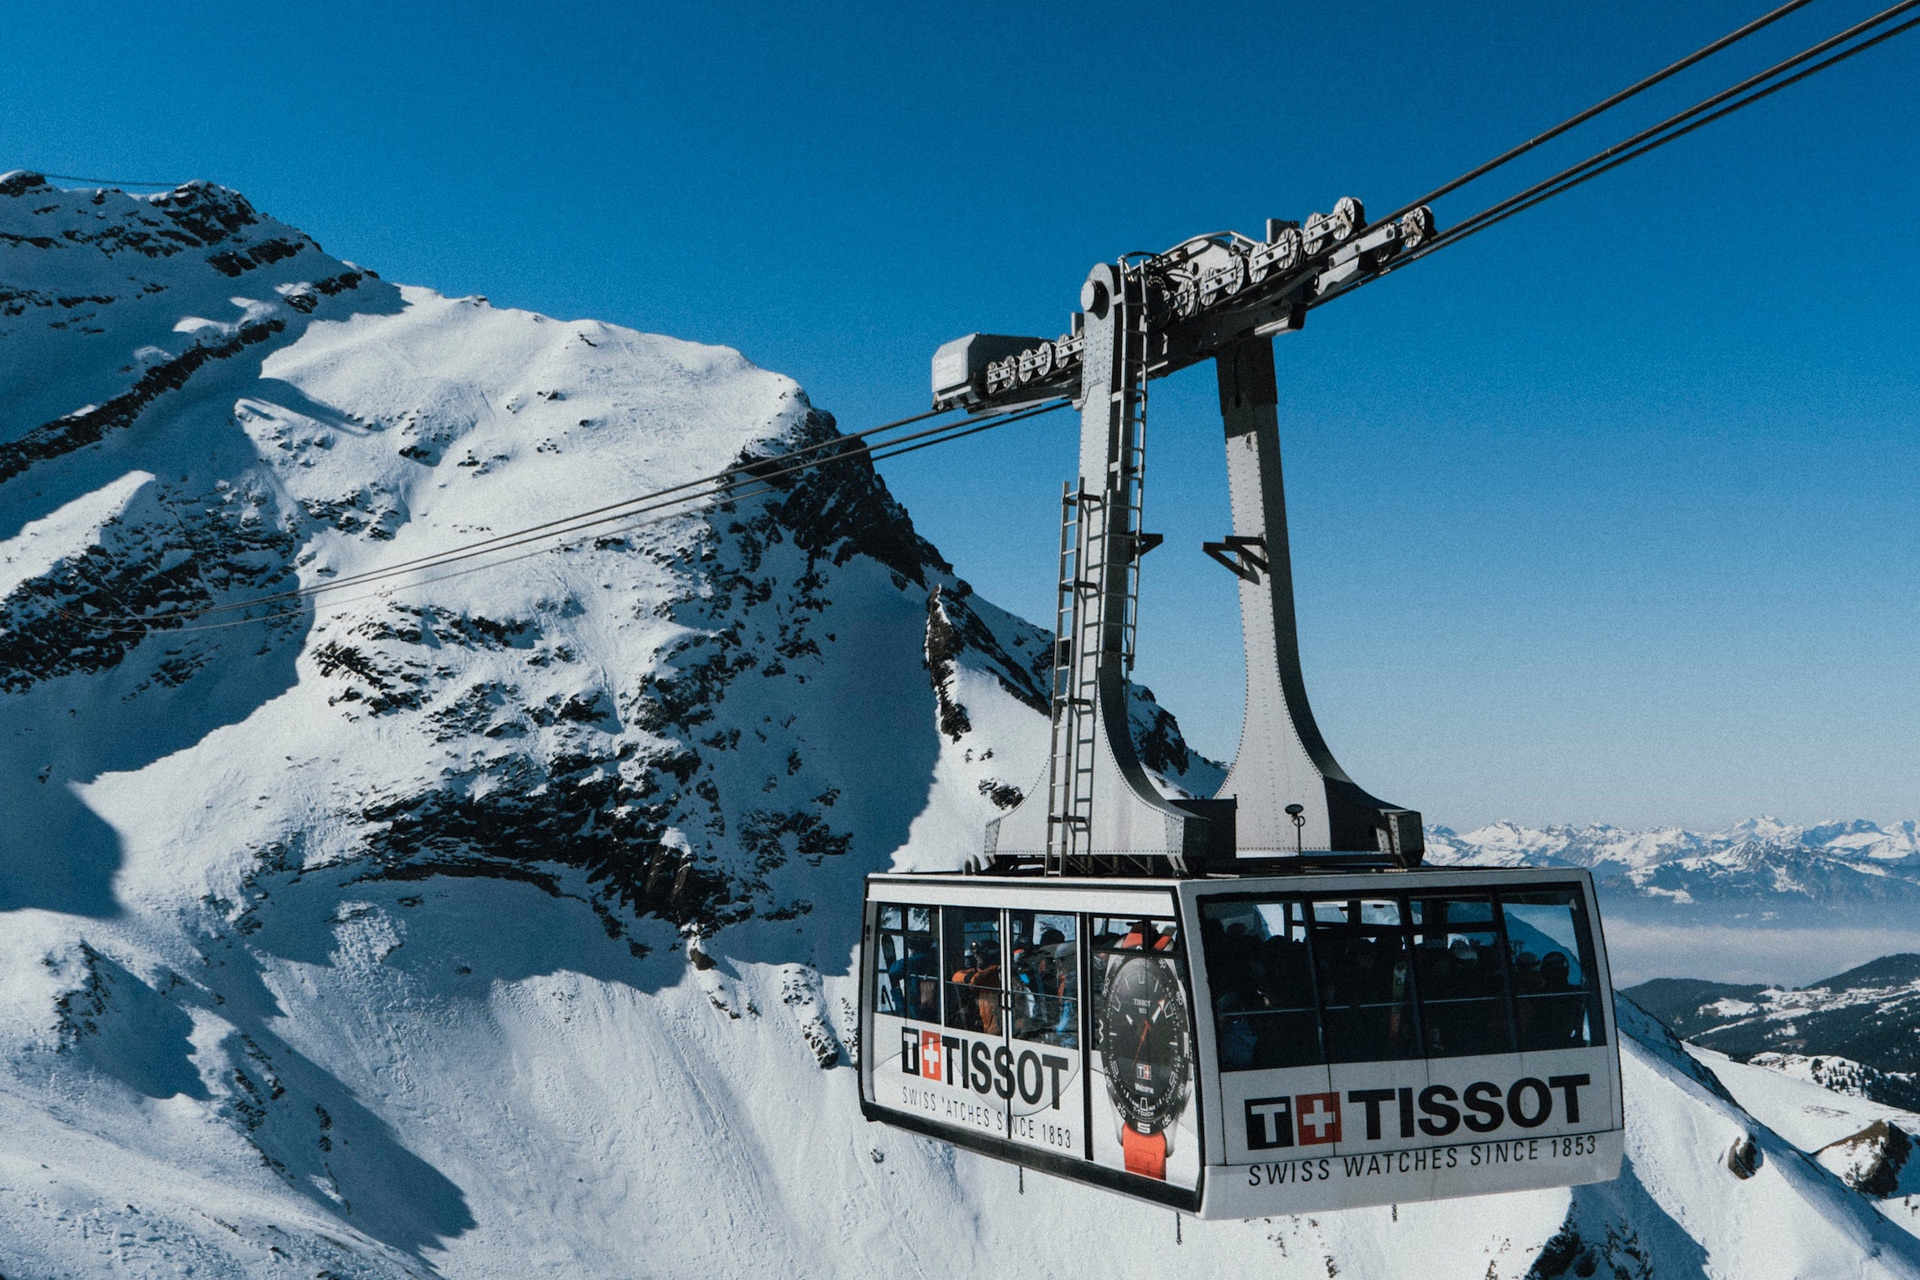 Versterken Gemaakt om te onthouden wij How To Do Gstaad in Style: The Ultimate Travel Guide